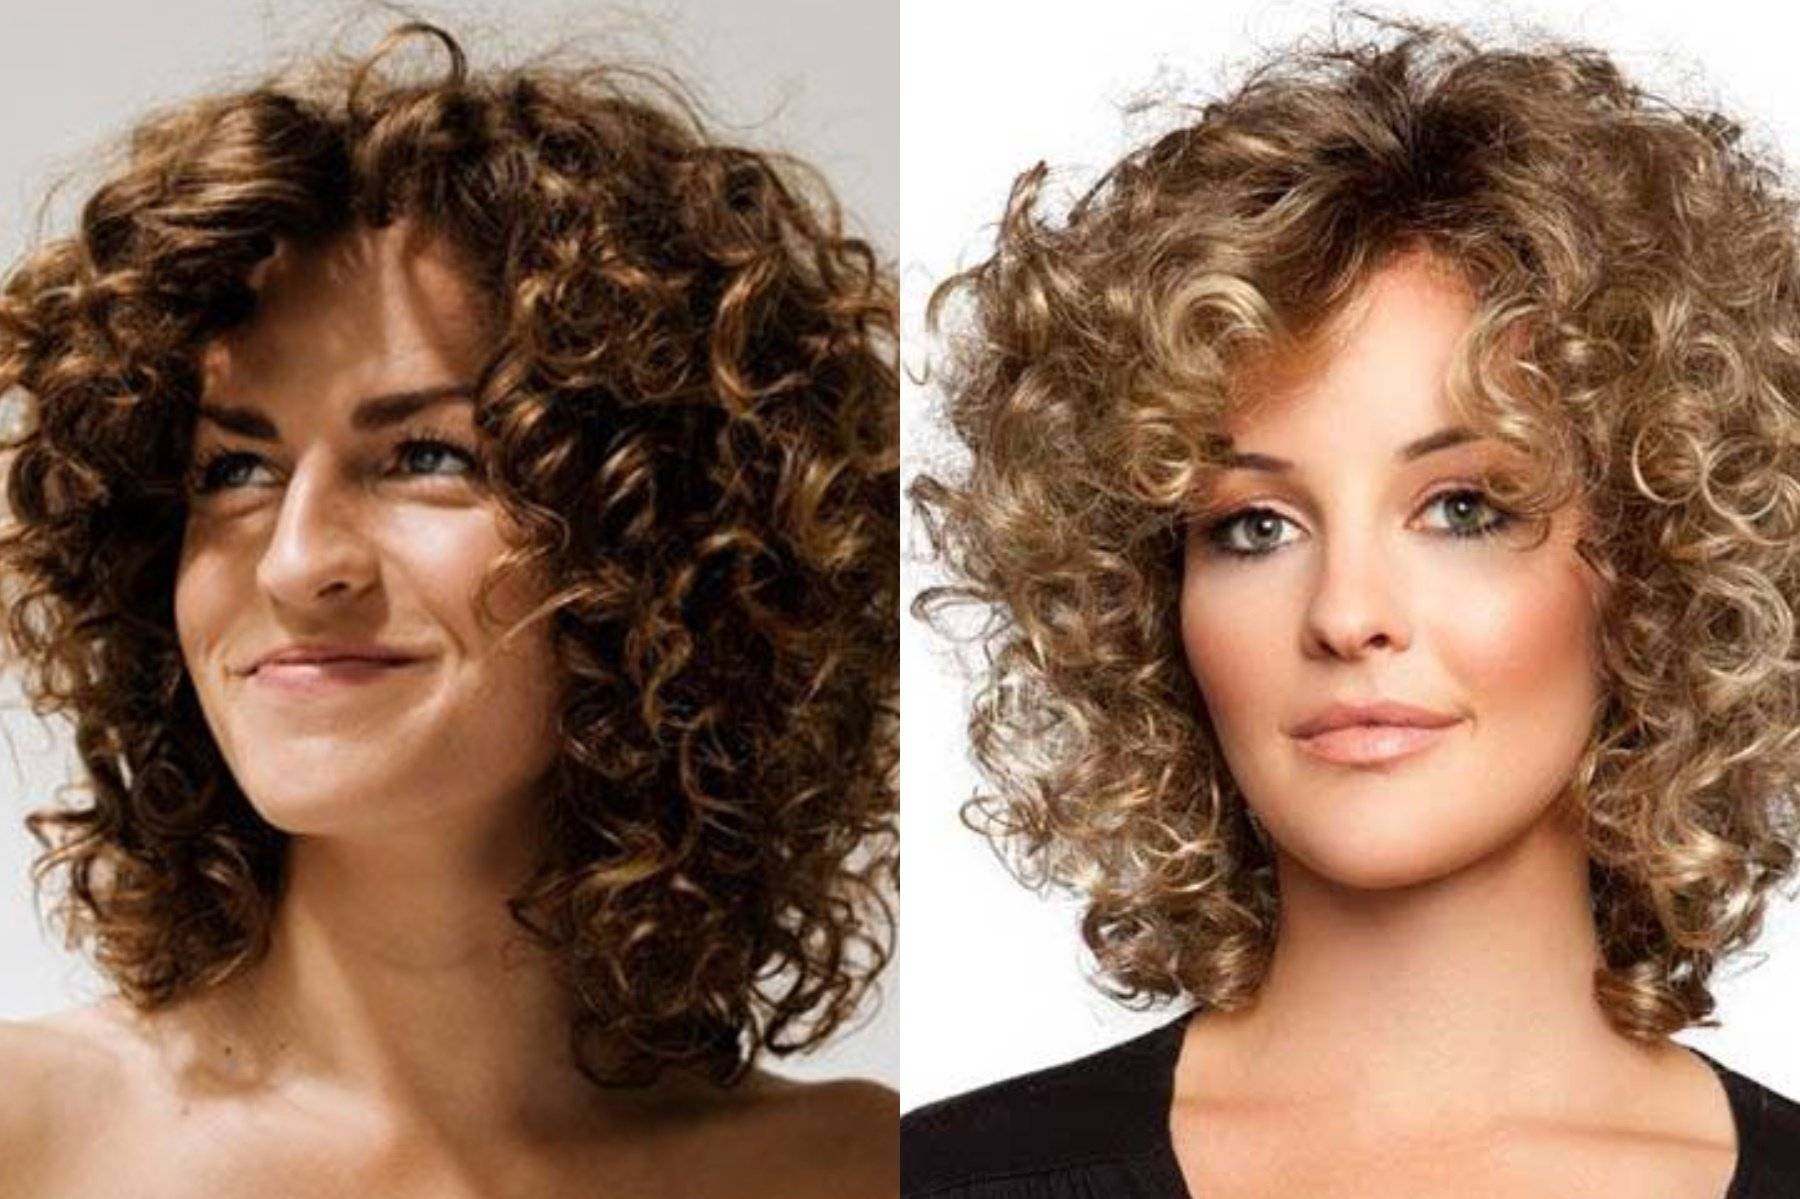 Биозавивка волос – фото до и после: на средние волосы локоны
биозавивка волос: стоит ли игра свеч? — modnayadama